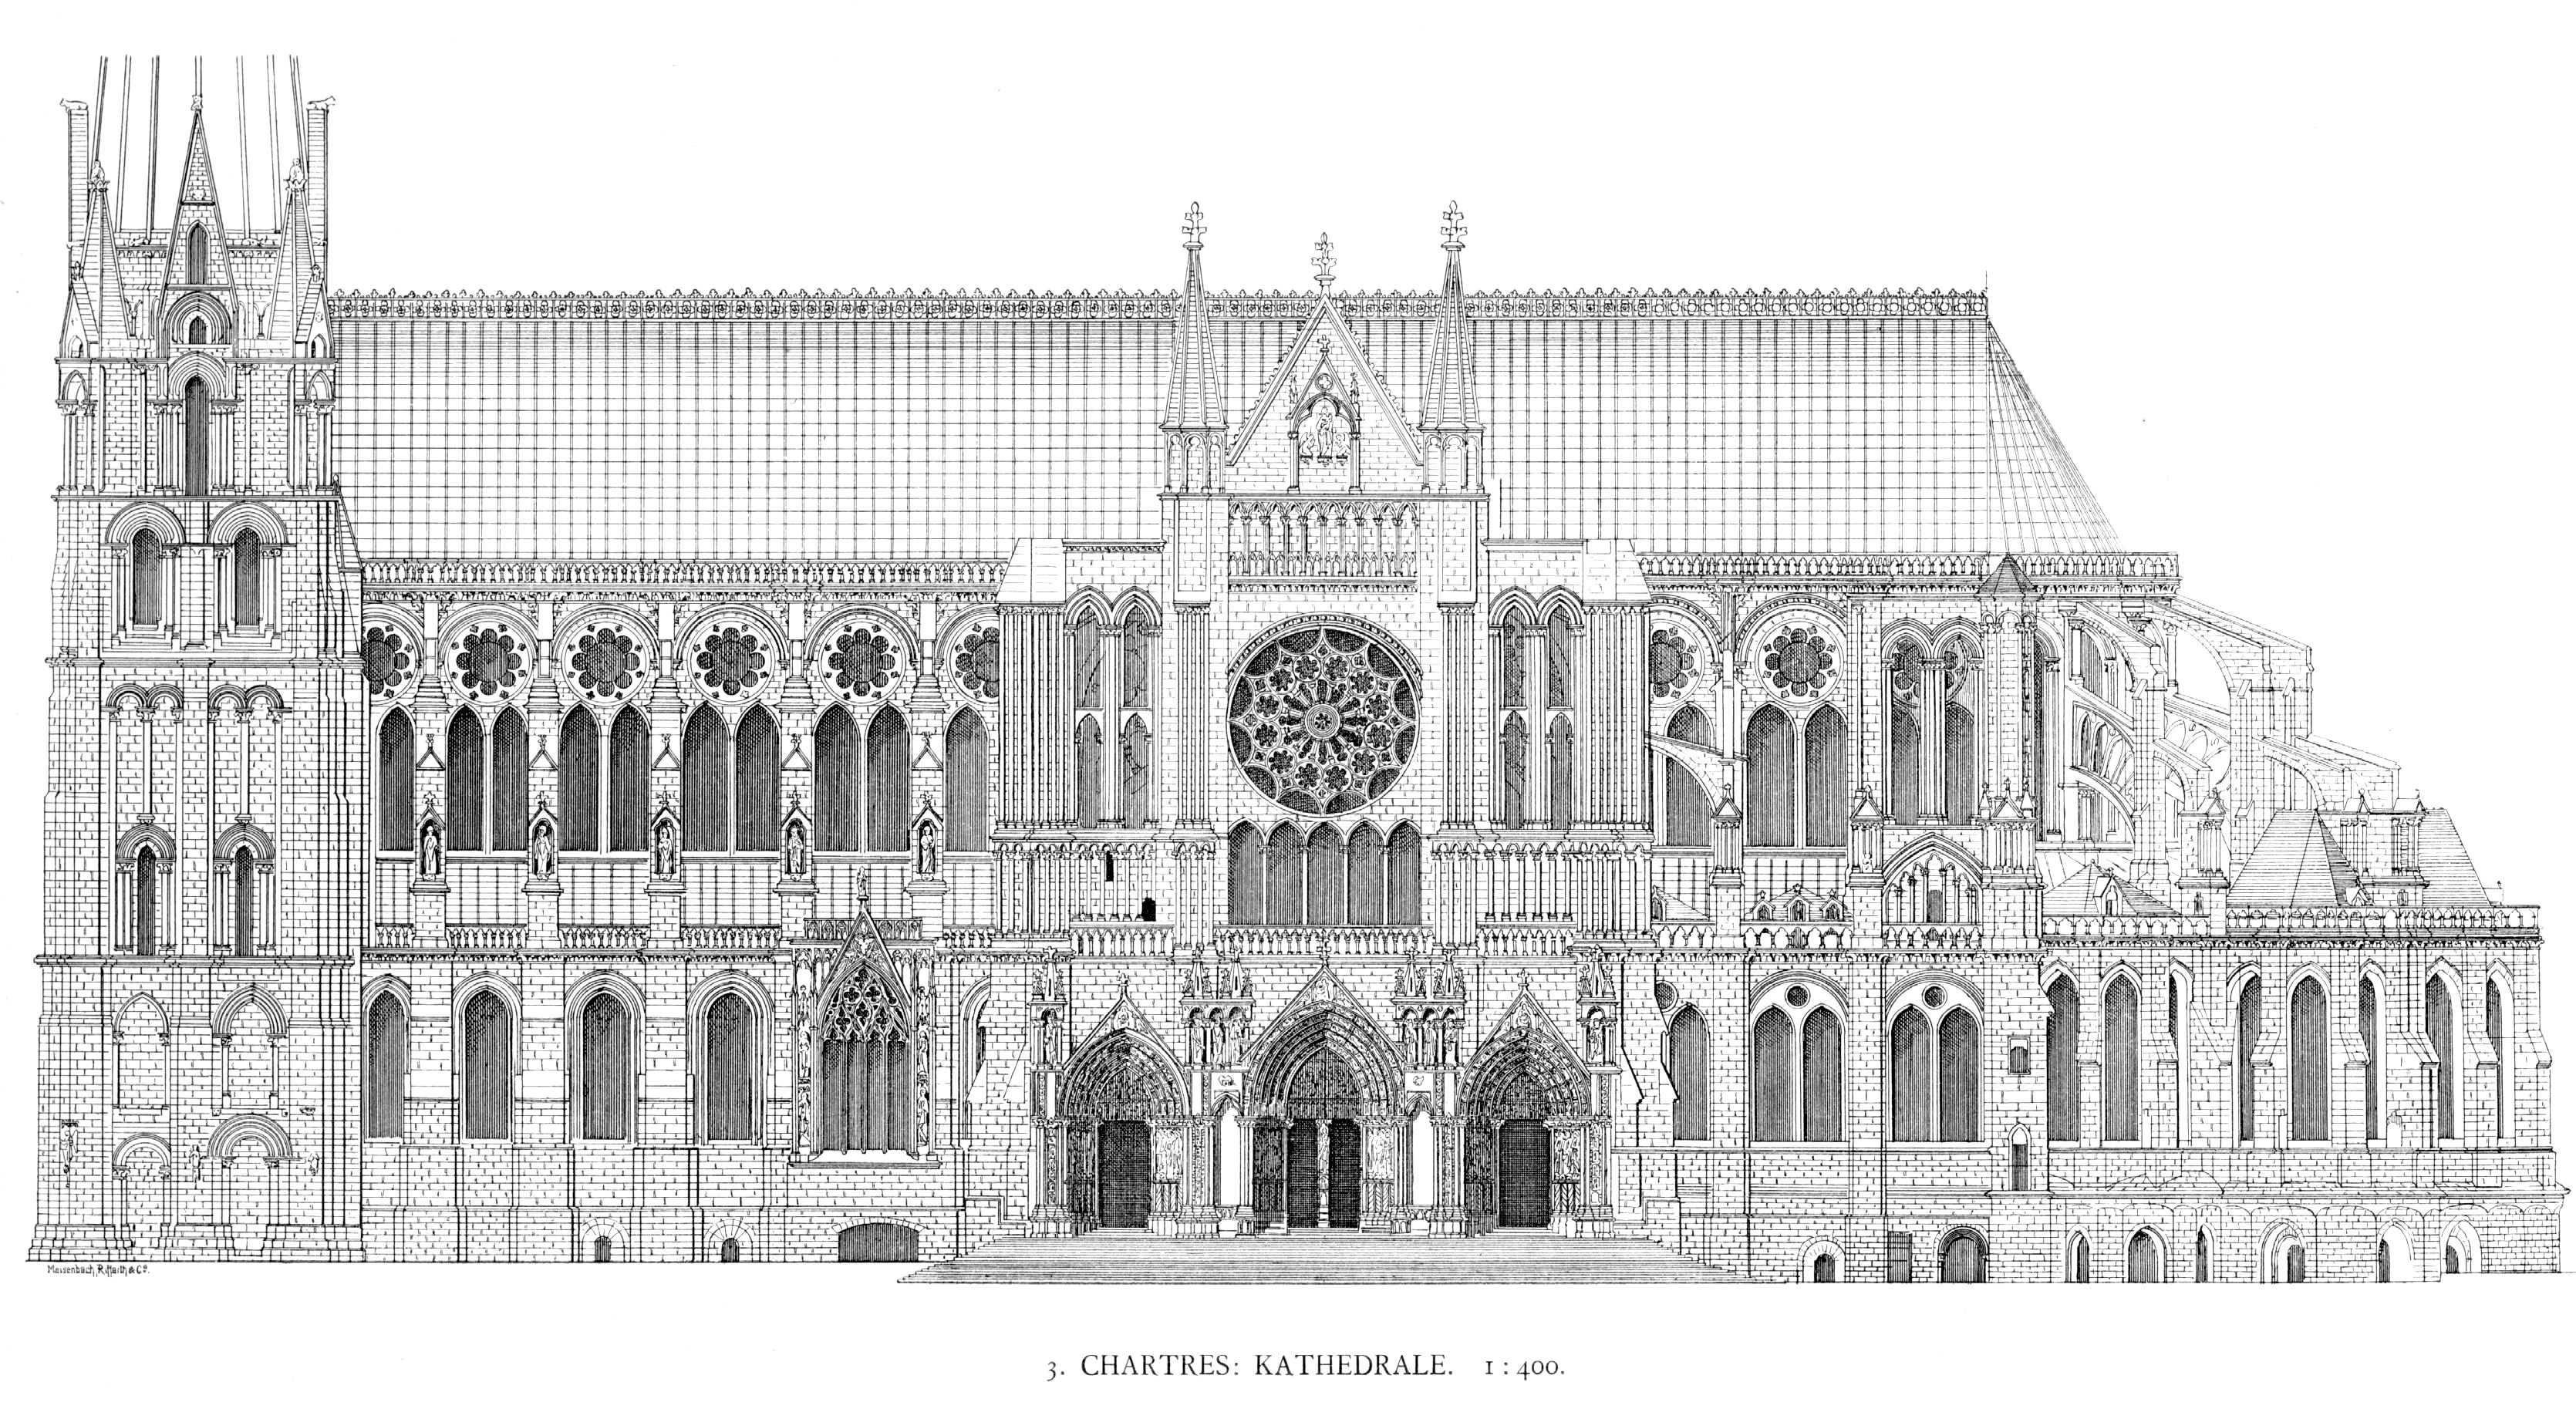 Katedrála Chartres - pohled na kresbu katedrály směrem od jihu od G.G. Dehia